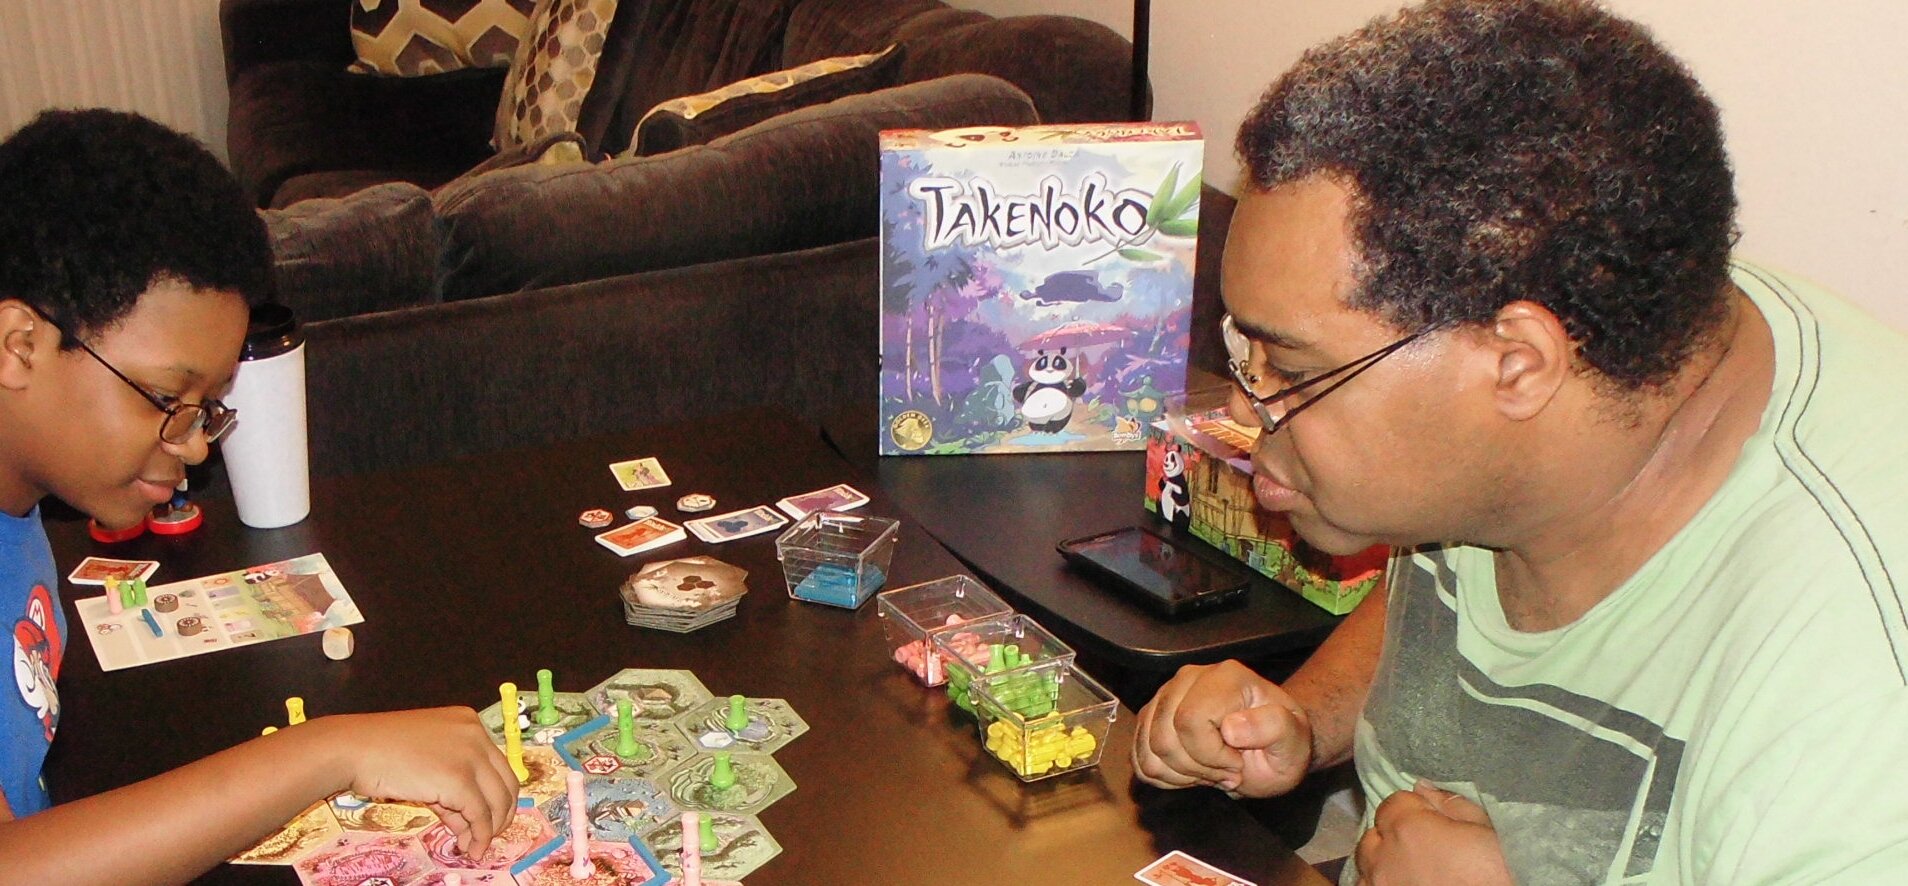 Takenoko-Play-8.9.2015-cropd.jpg